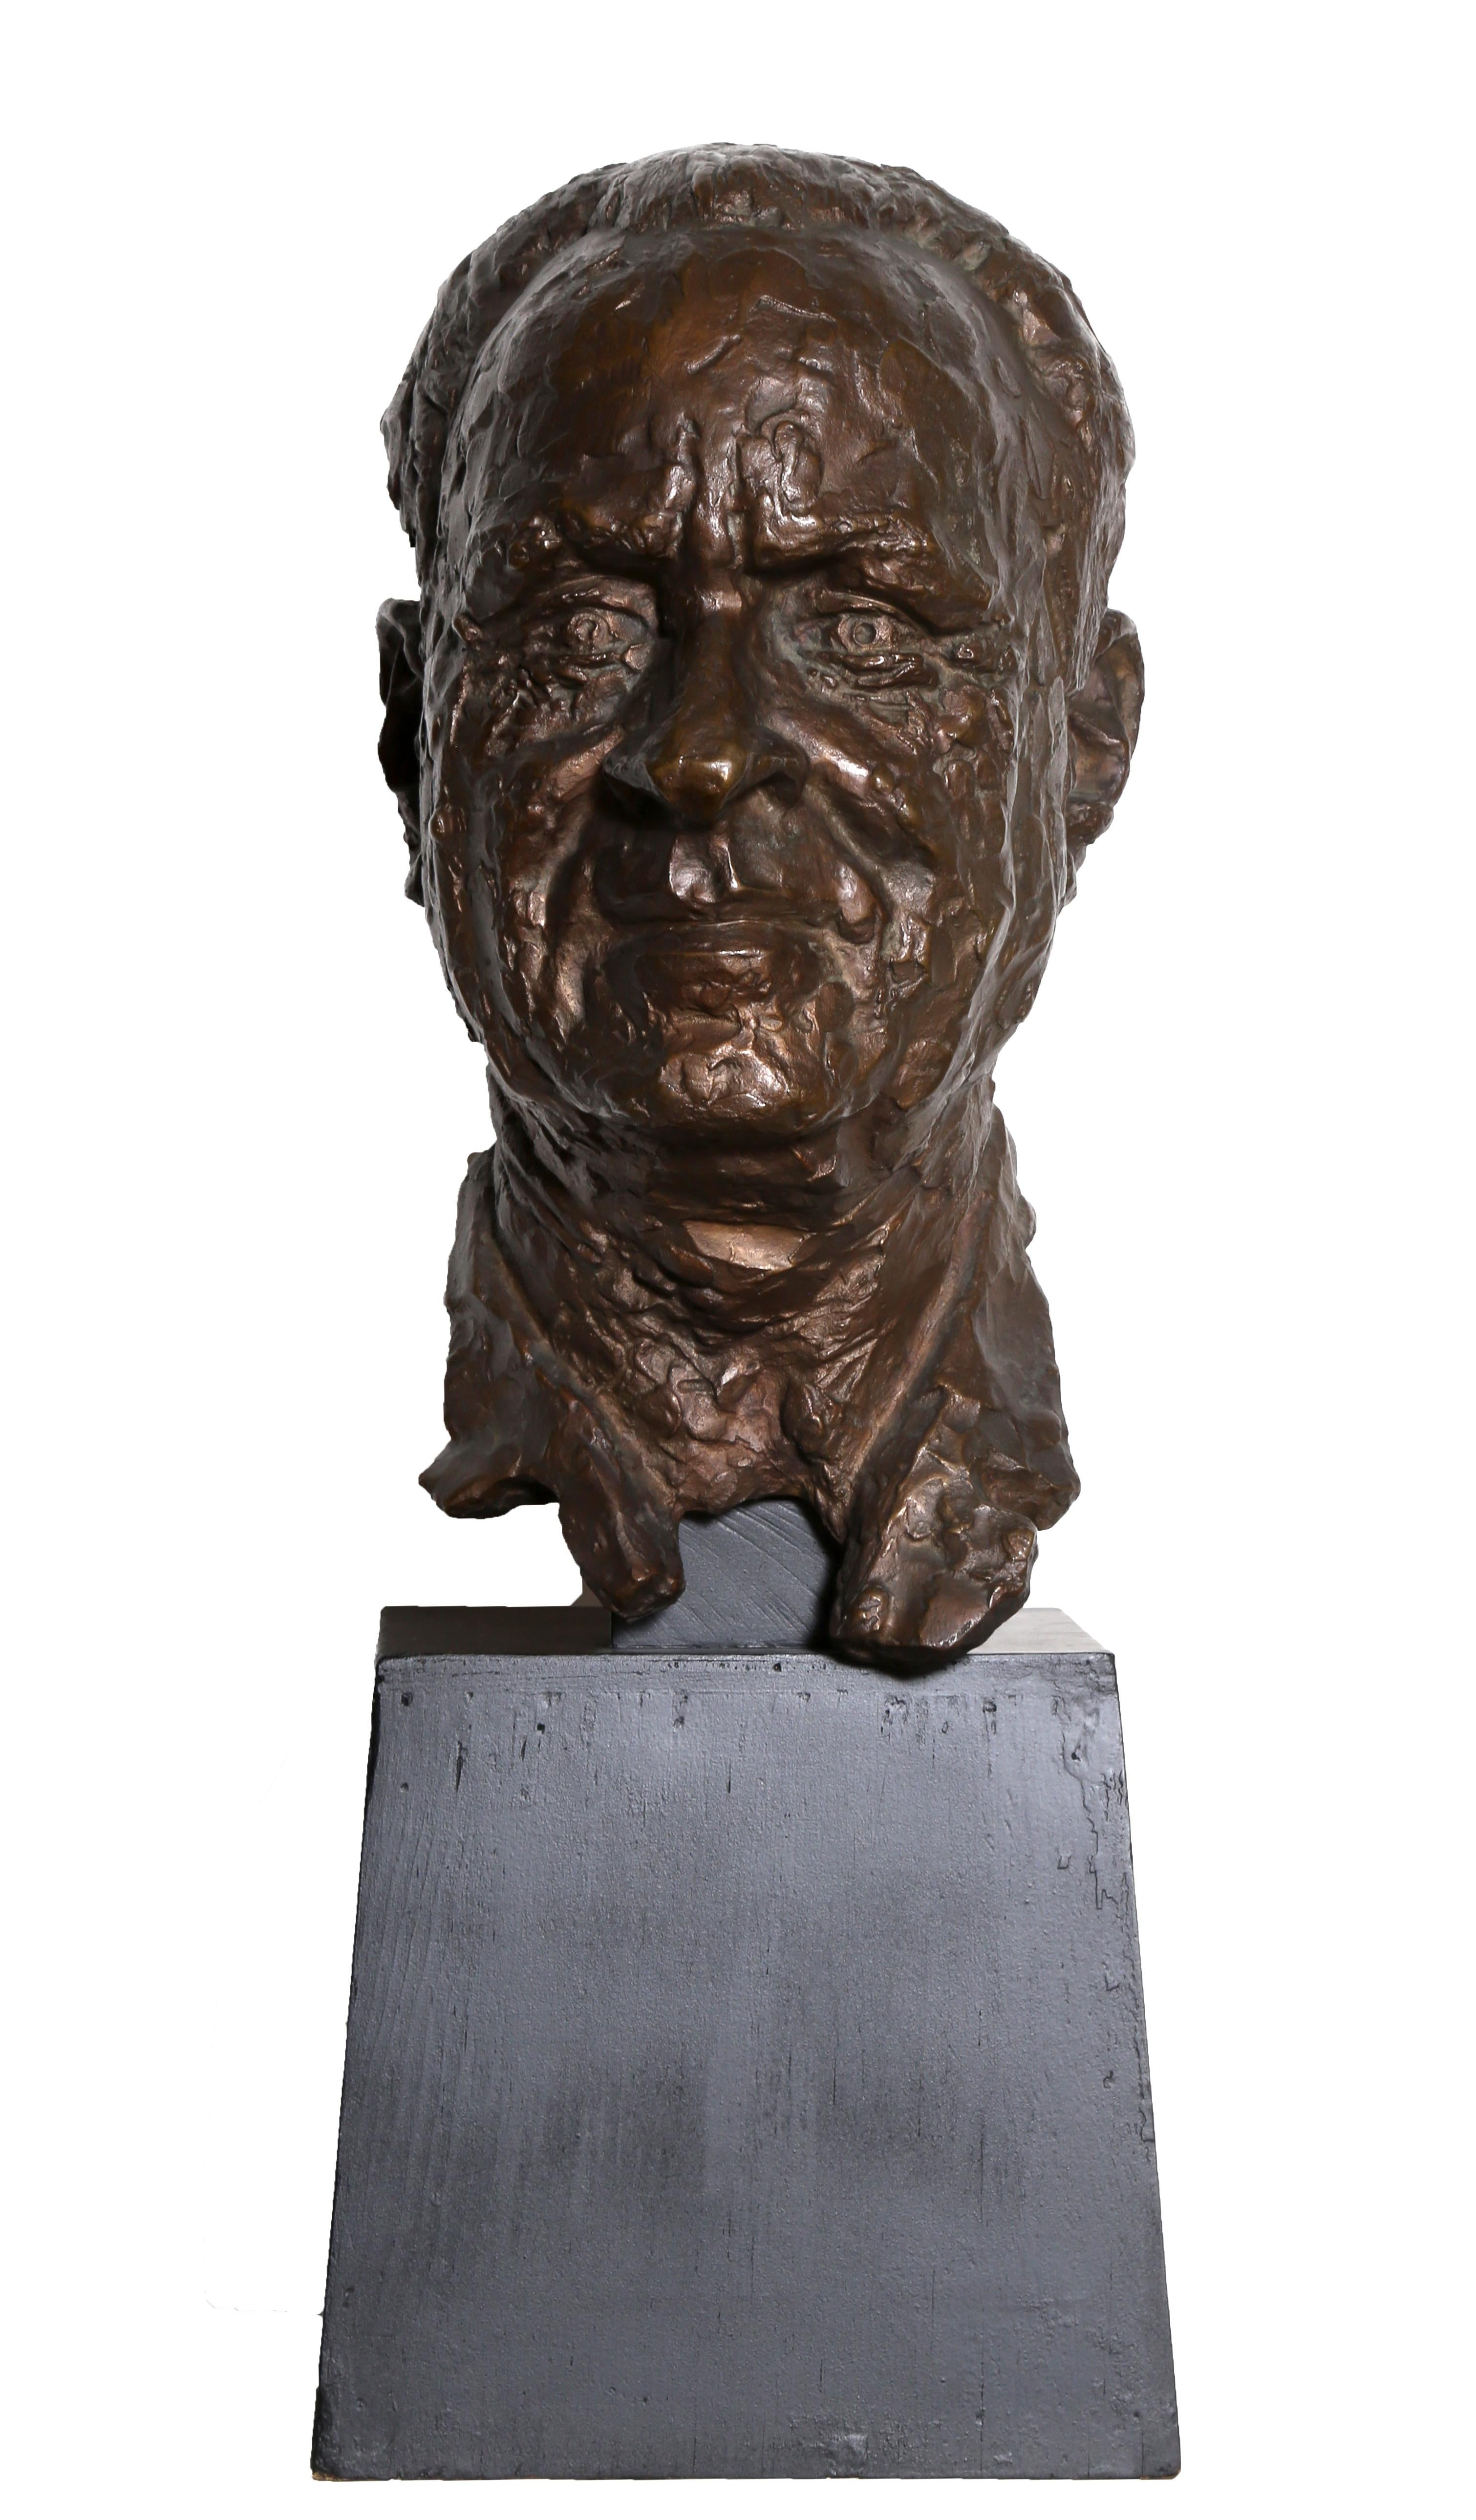 Künstler: Chaim Gross, Österreicher/Amerikaner (1904 - 1991)
Titel: Büste eines Mannes
Jahr: 1967
Medium: Bronzeskulptur, Signatur eingeschrieben
Größe: 12,5 x 6,5 x 8,5 in. (31,75 x 16,51 x 21,59 cm)
Sockel: 7 x 8 x 7,5 Zoll